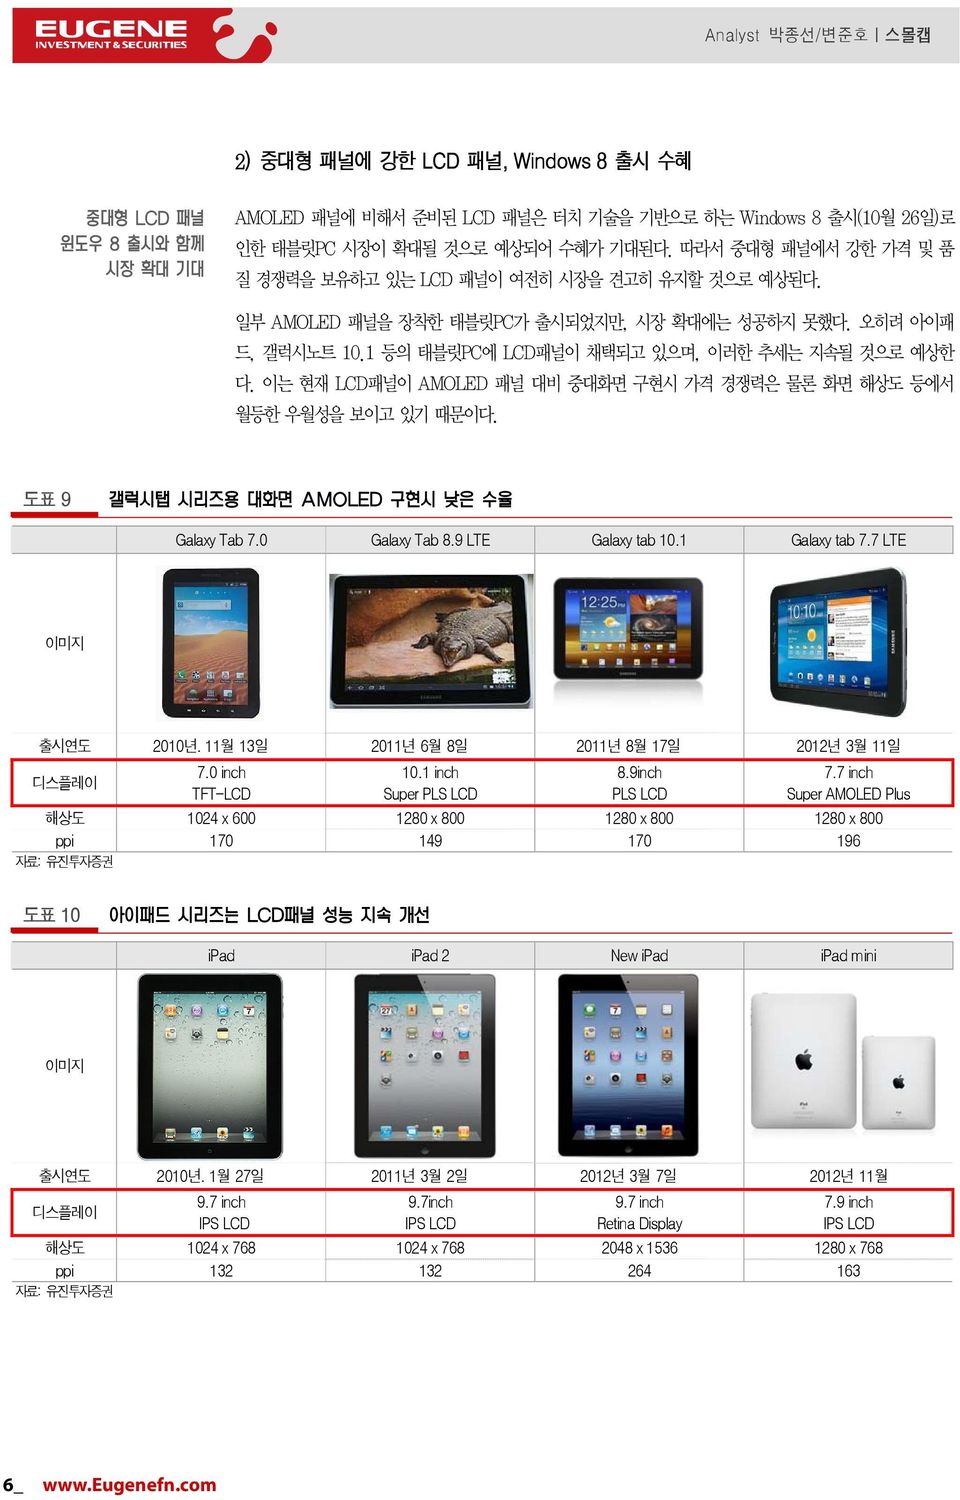 Galaxy Tab 8.9 LTE Galaxy tab 1.1 Galaxy tab 7.7 LTE 출시연도 21 년. 11 월 13 일 211 년 6 월 8 일 211 년 8 월 17 일 212 년 3 월 11 일 7. inch TFT-LCD 1.1 inch Super PLS LCD 8.9inch PLS LCD 7.